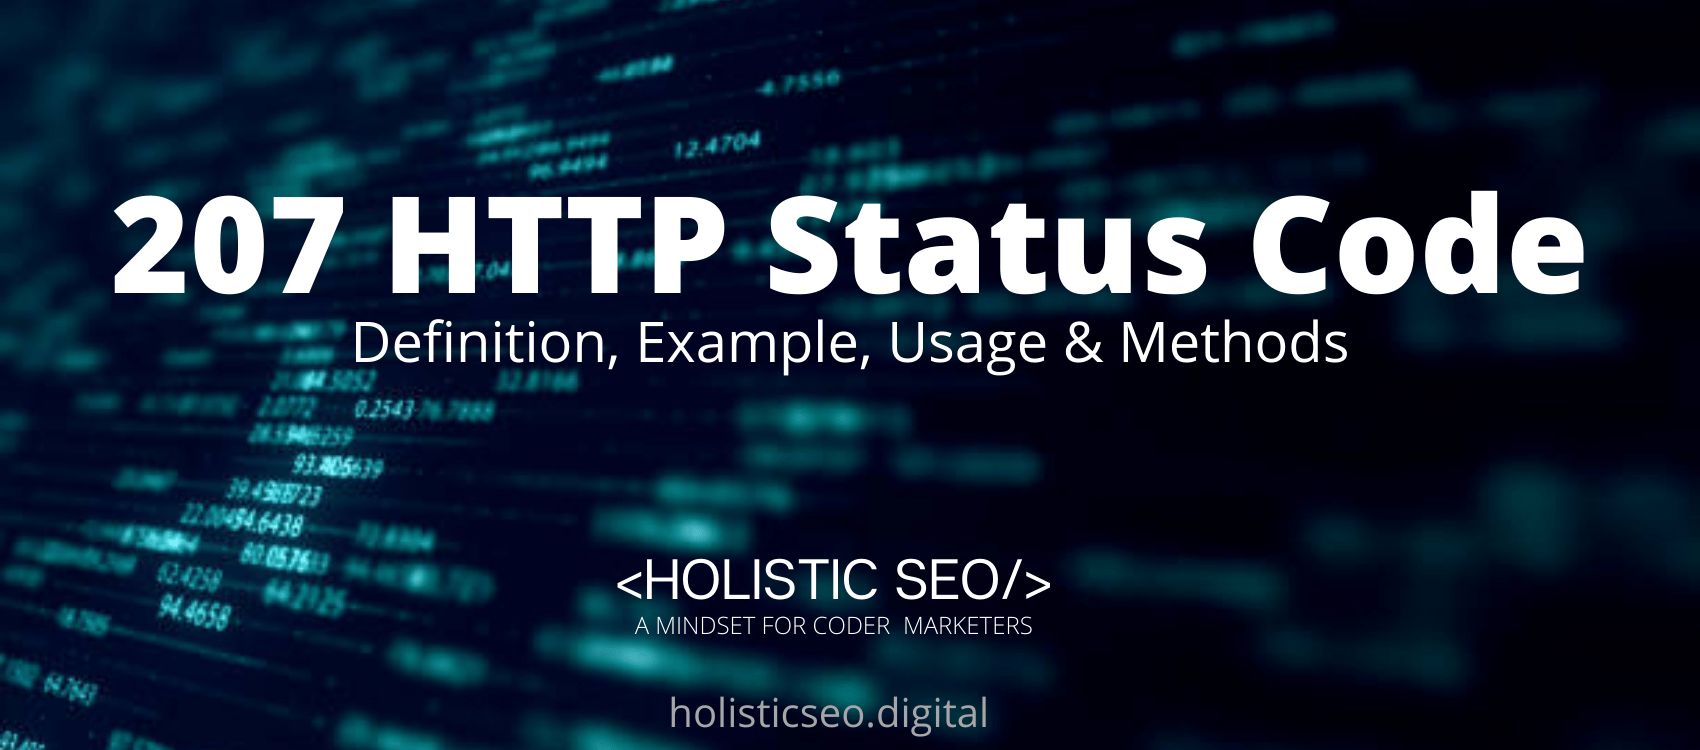 207 HTTP Status Code